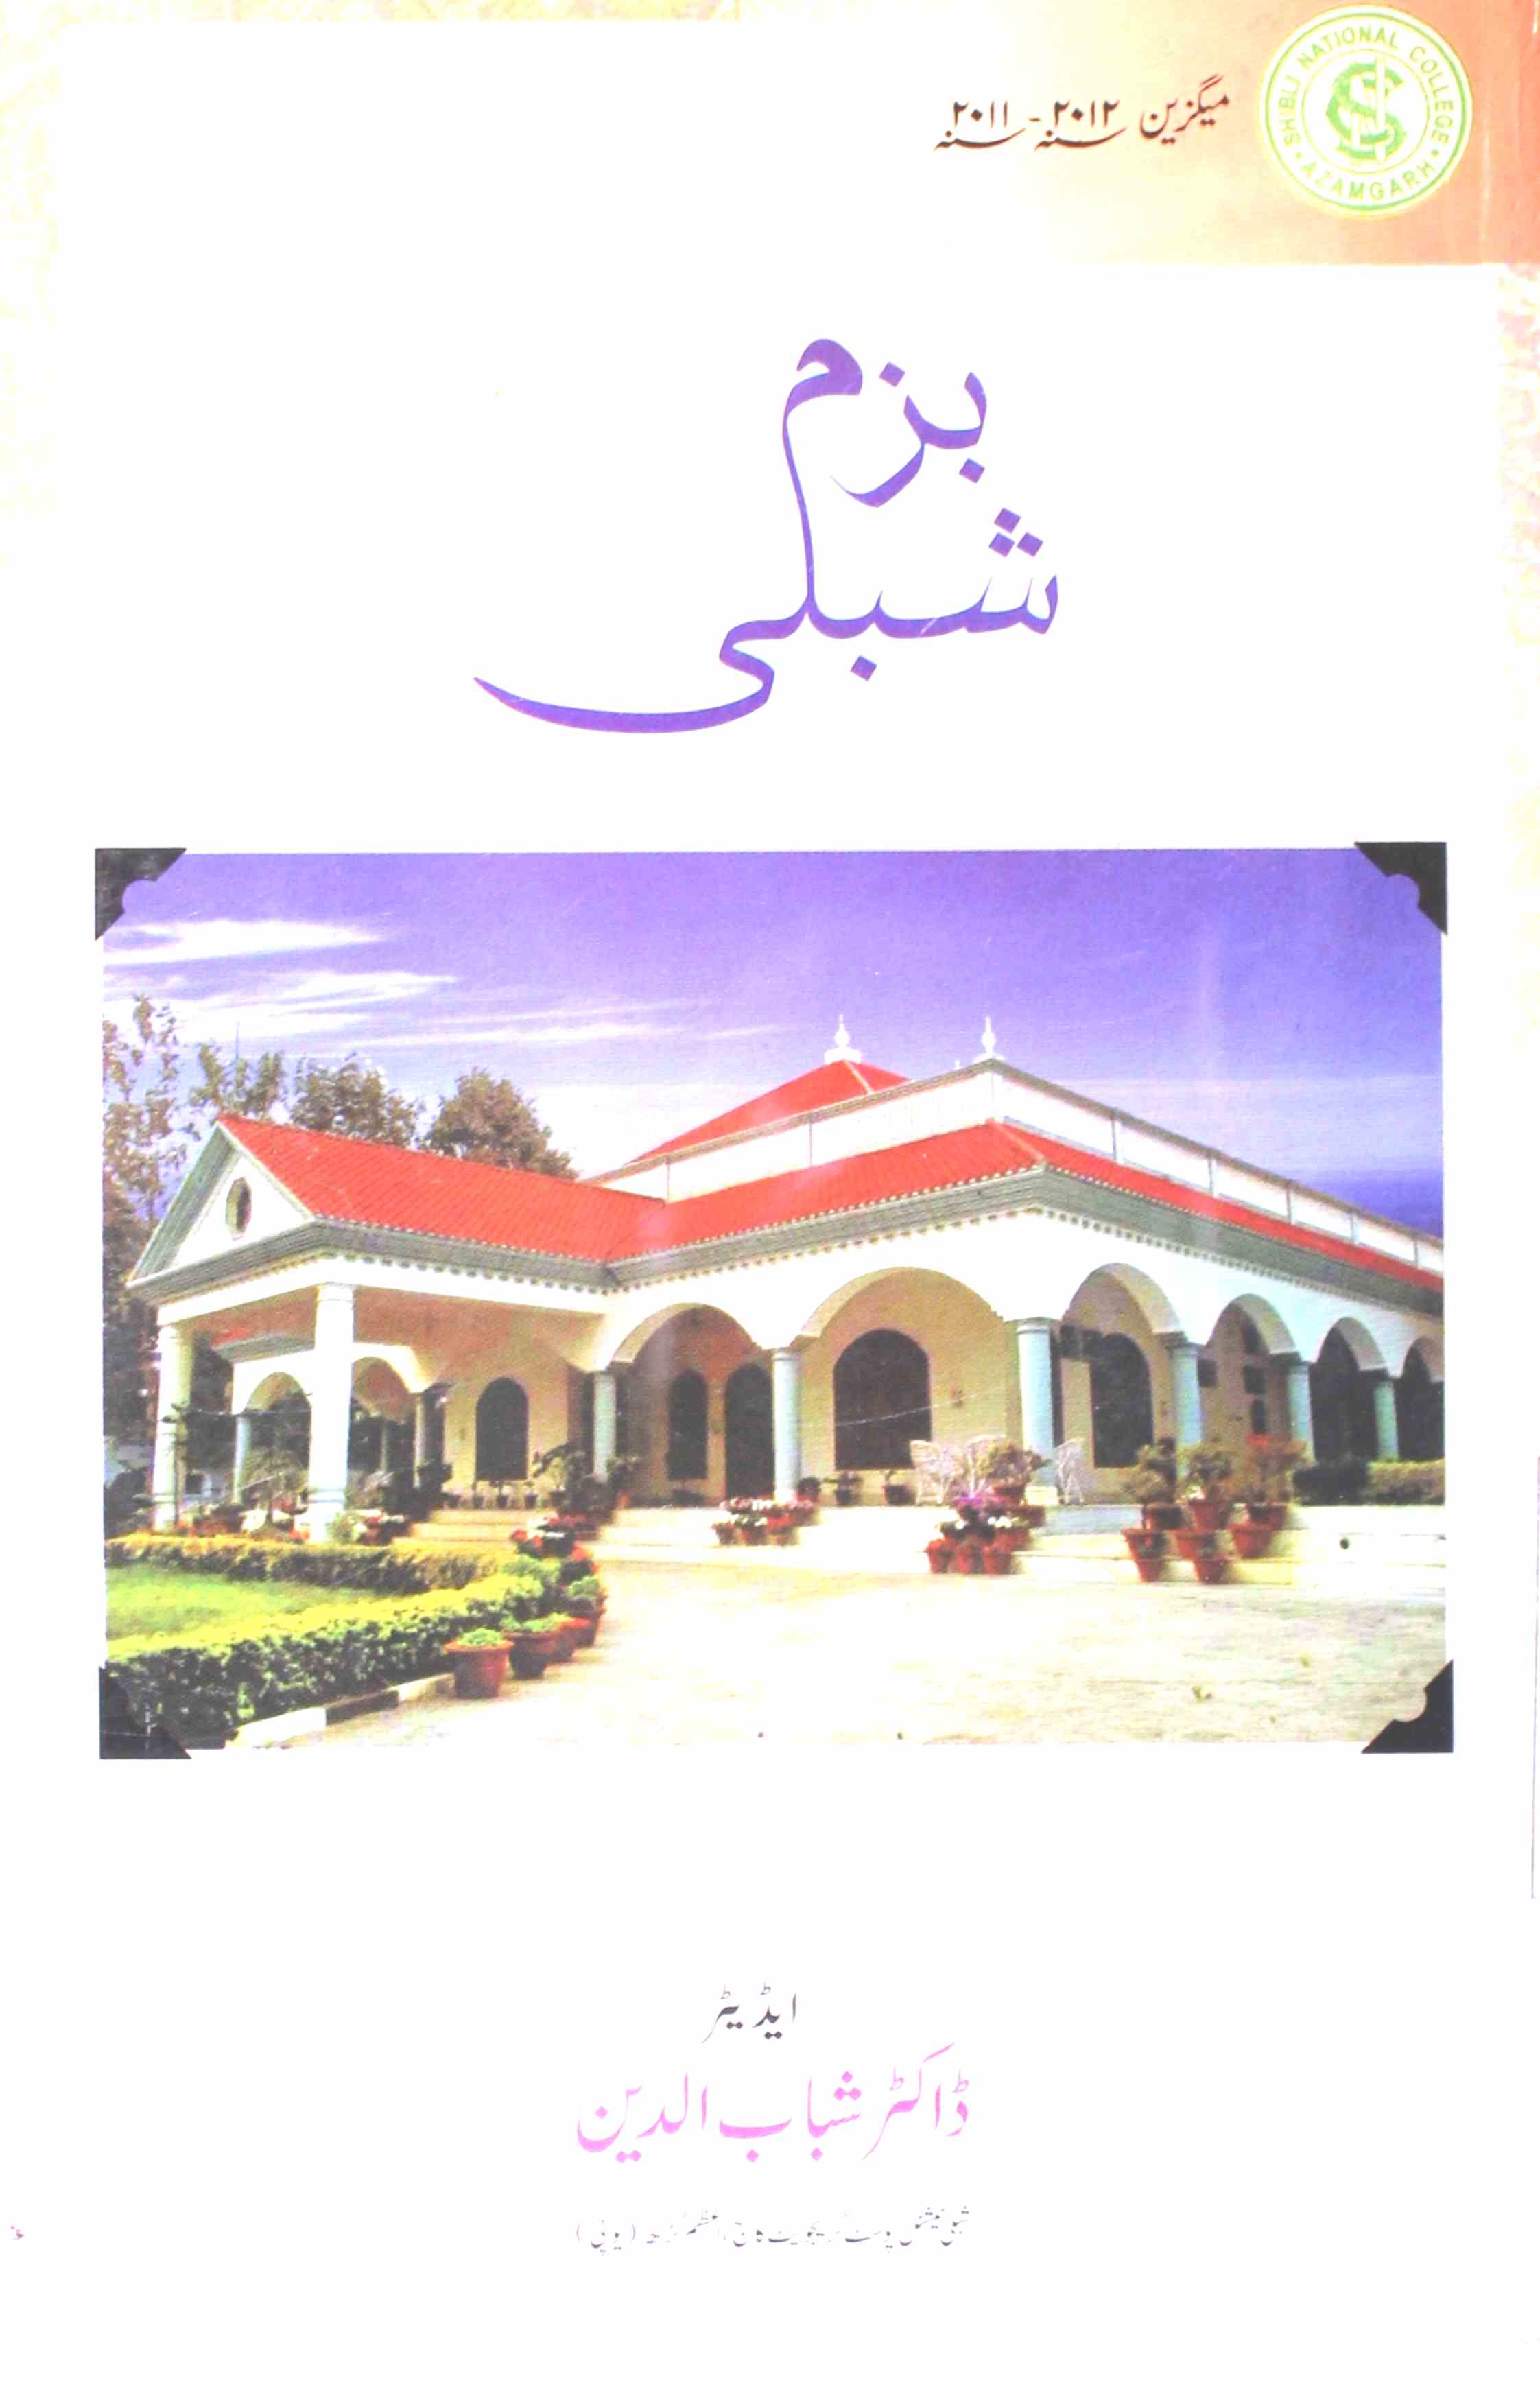 Bazm-e-Shibli- Magazine by Al-Huda Publication, New Delhi, Shibli National College, Azamgarh 